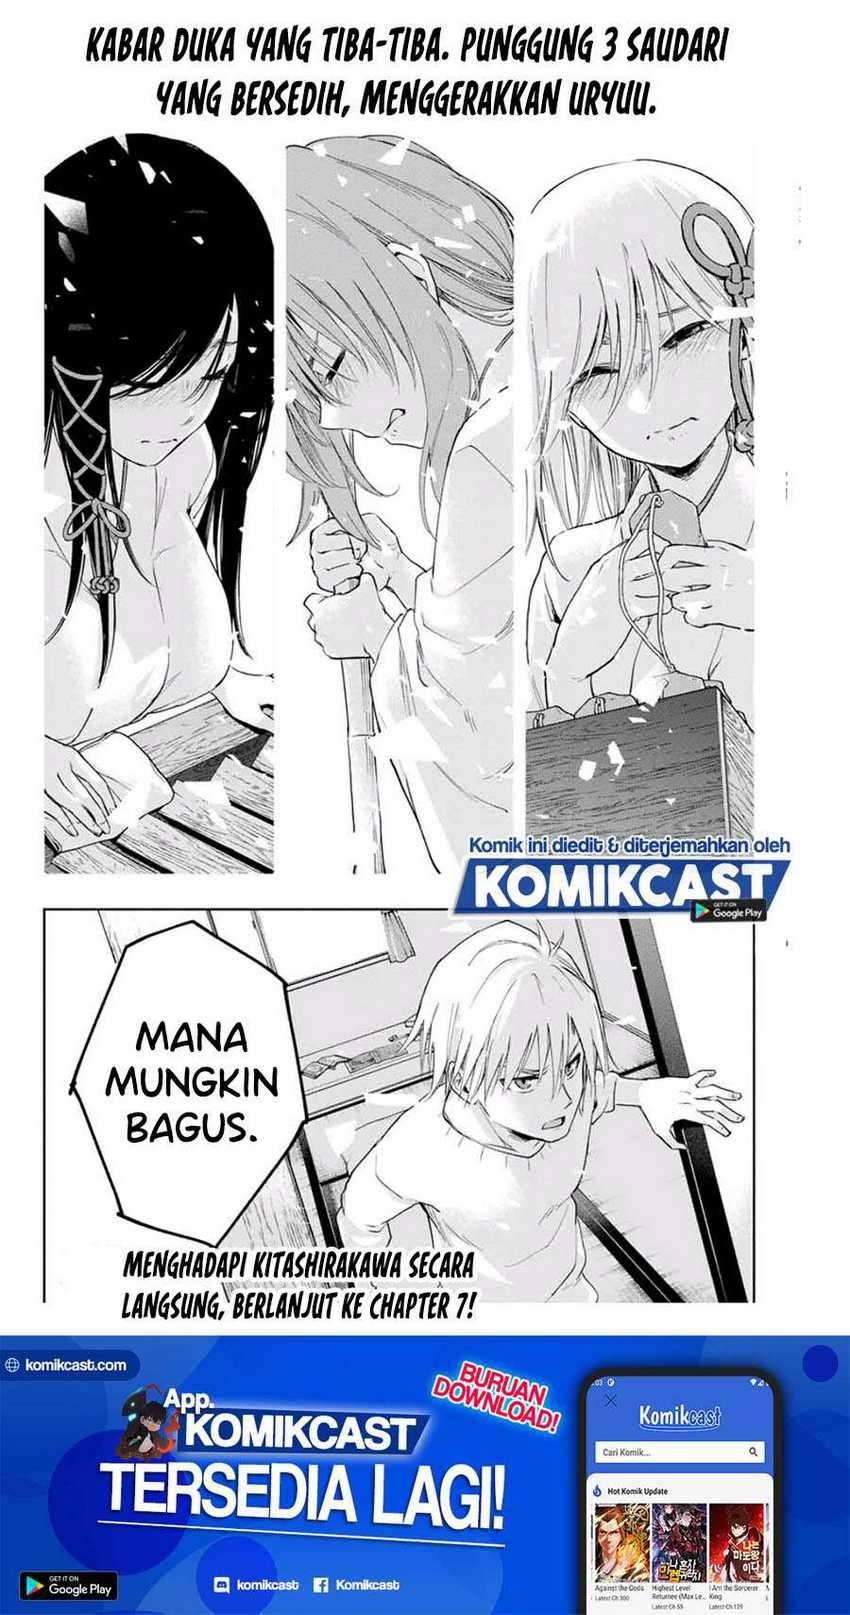 Amagami-san Chi no Enmusubi Chapter 06 Bahasa Indonesia